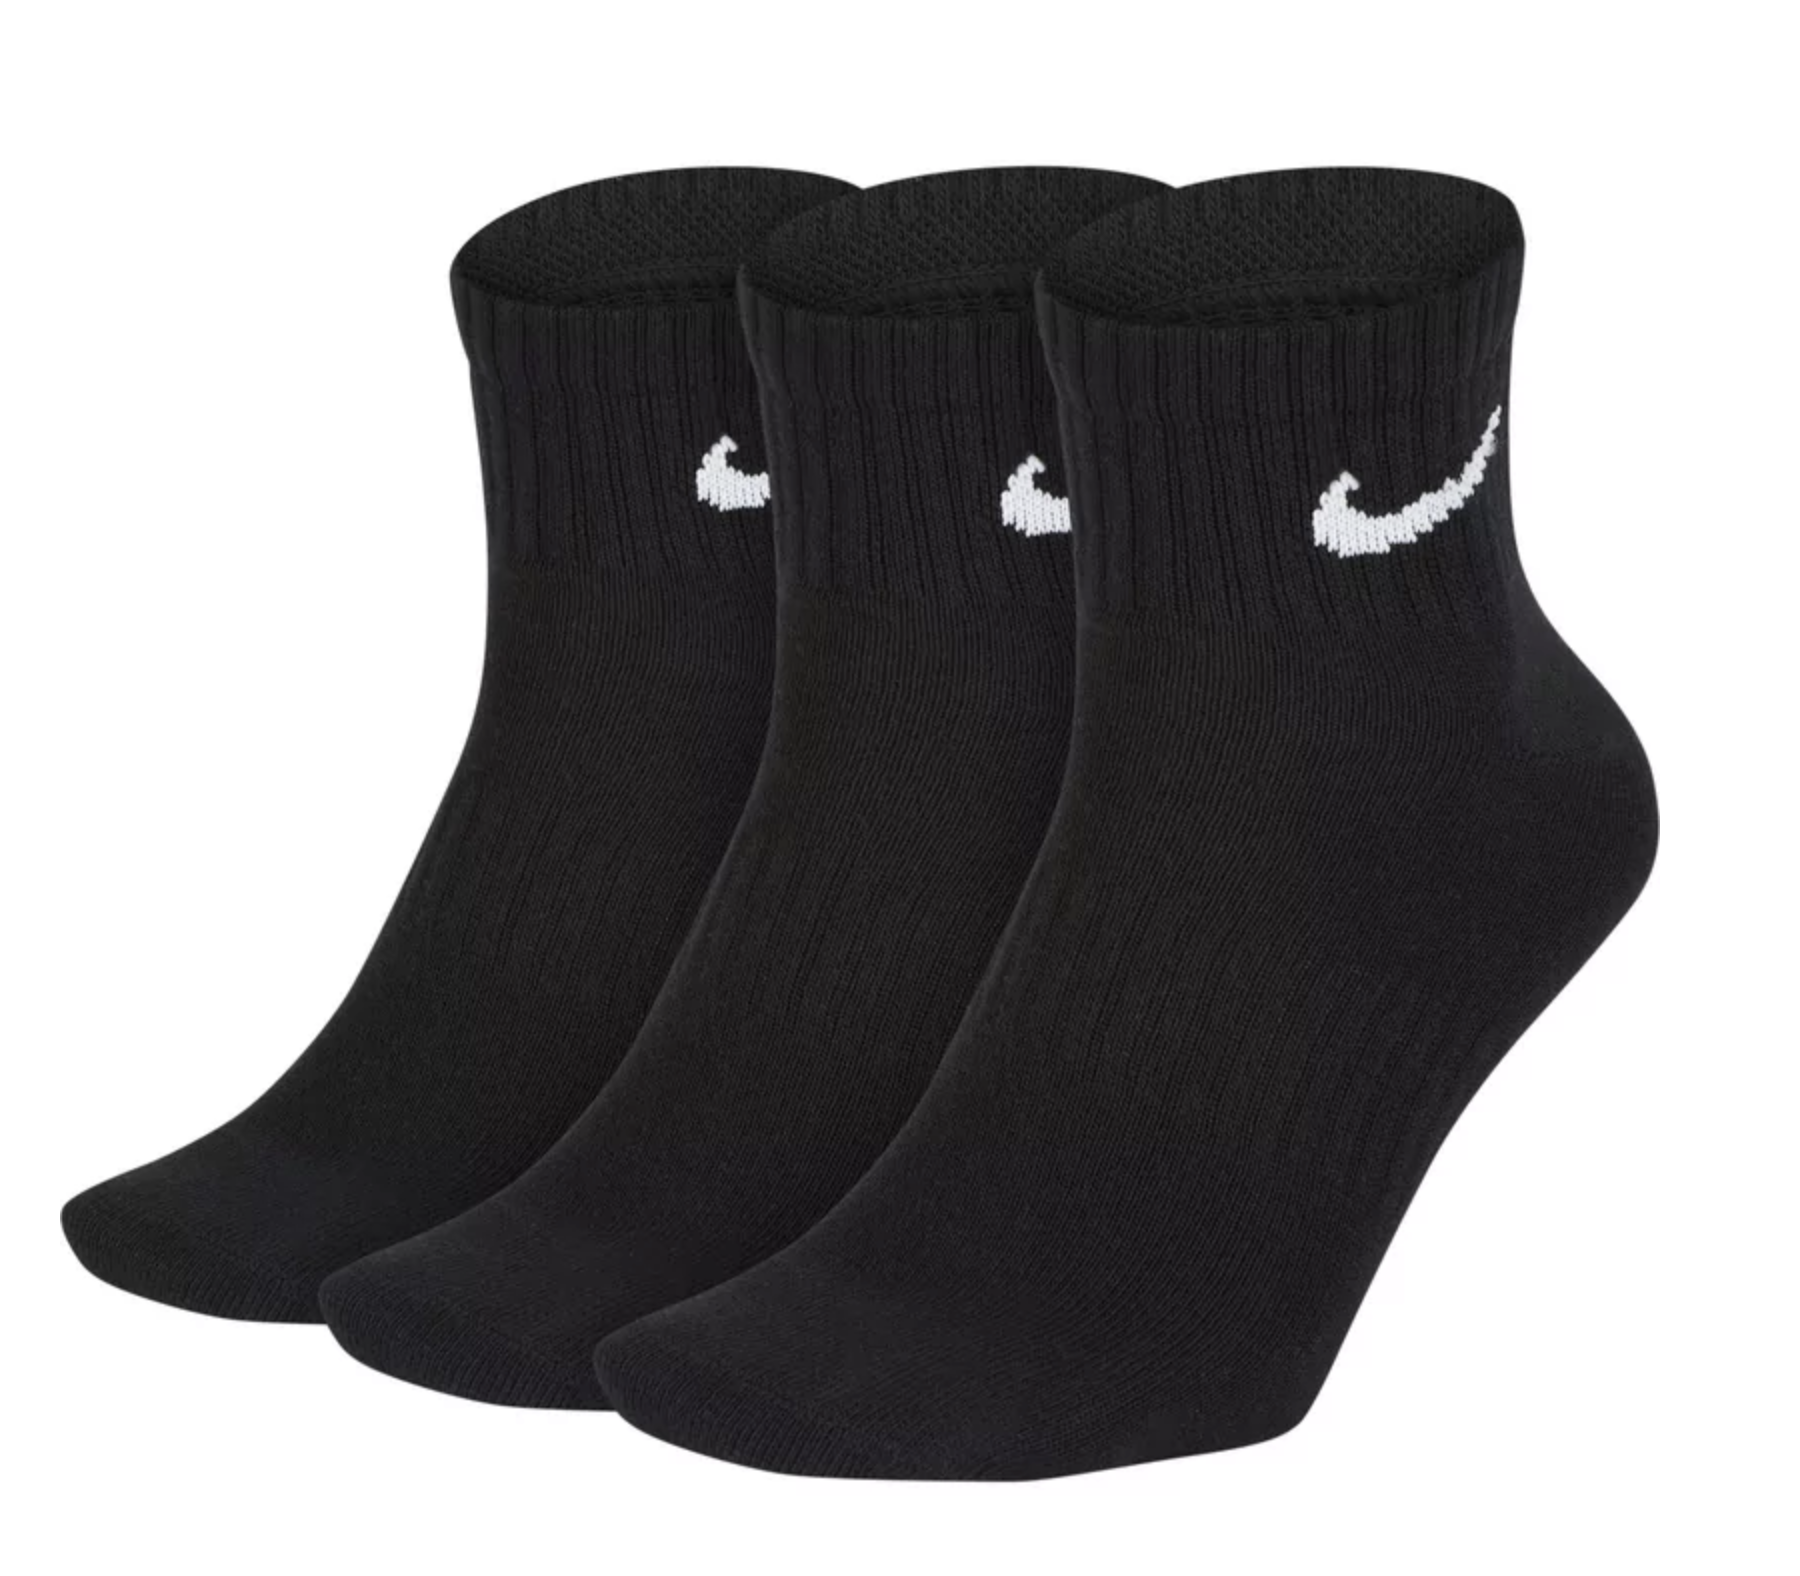 Nike Everyday Lightweight Ankle 3er Pack Socken black/white